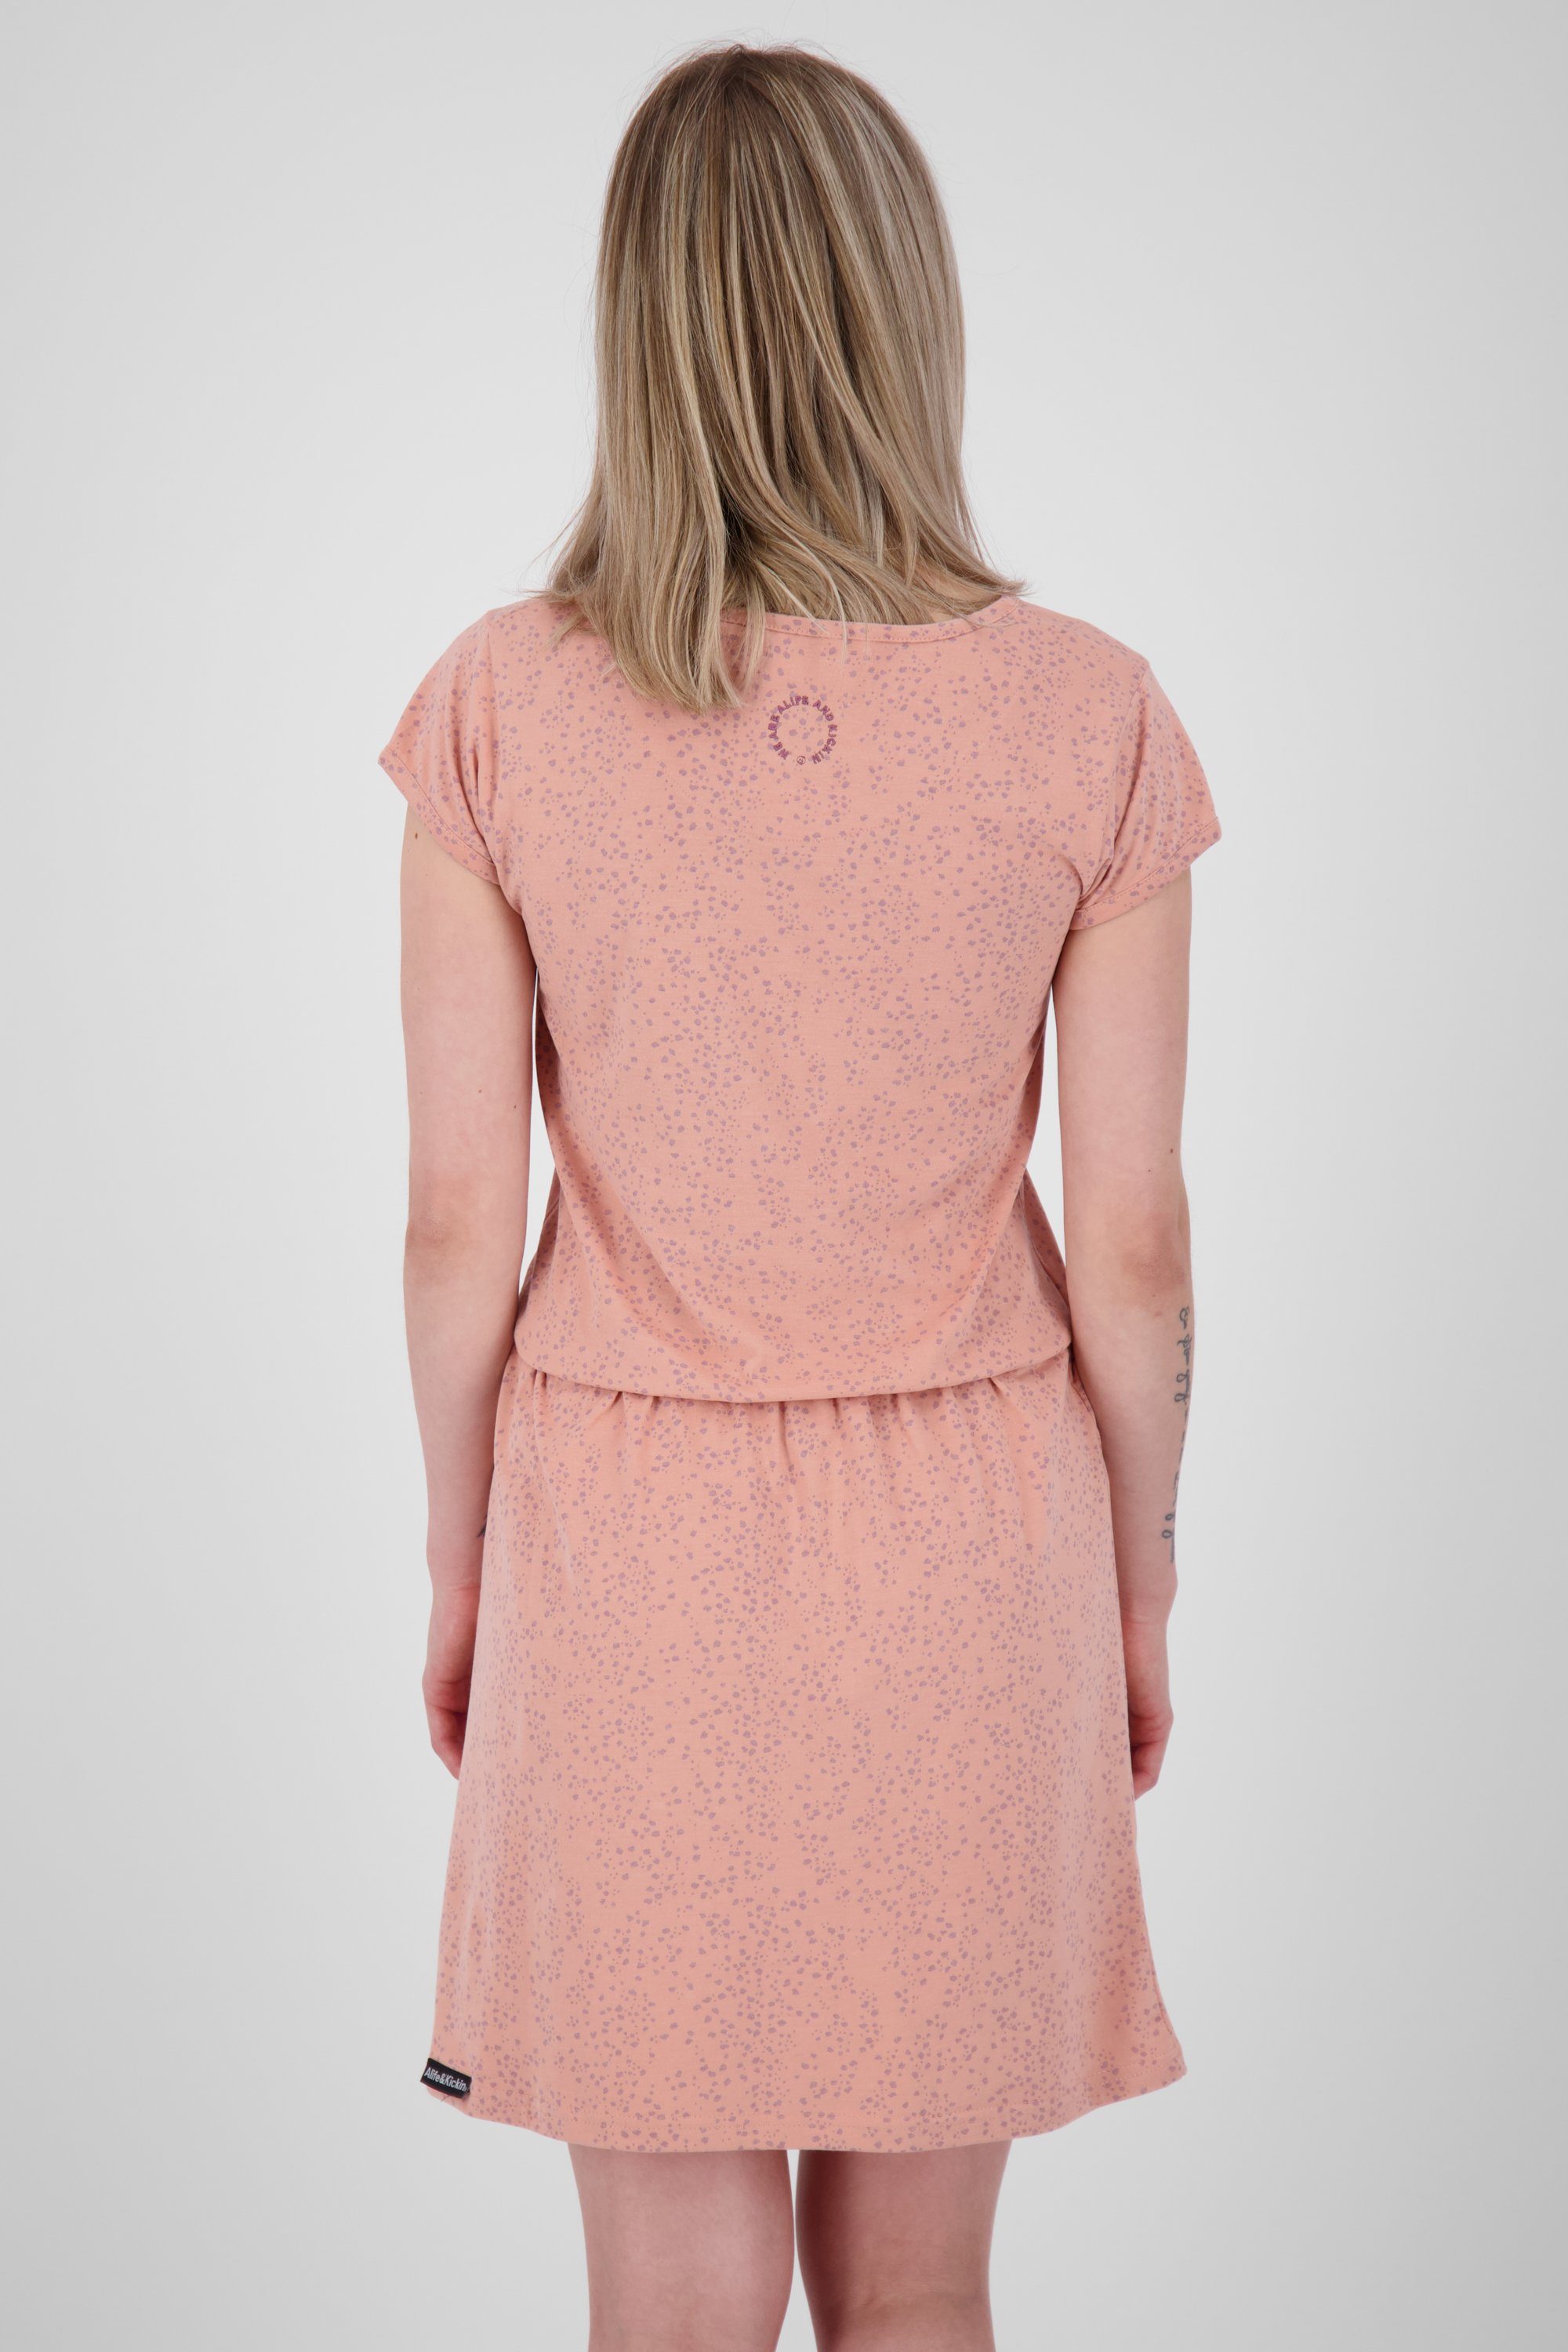 Alife & Kickin Blusenkleid mahagonium Sommerkleid, ShannaAK melange Damen B Kleid Shirt Dress